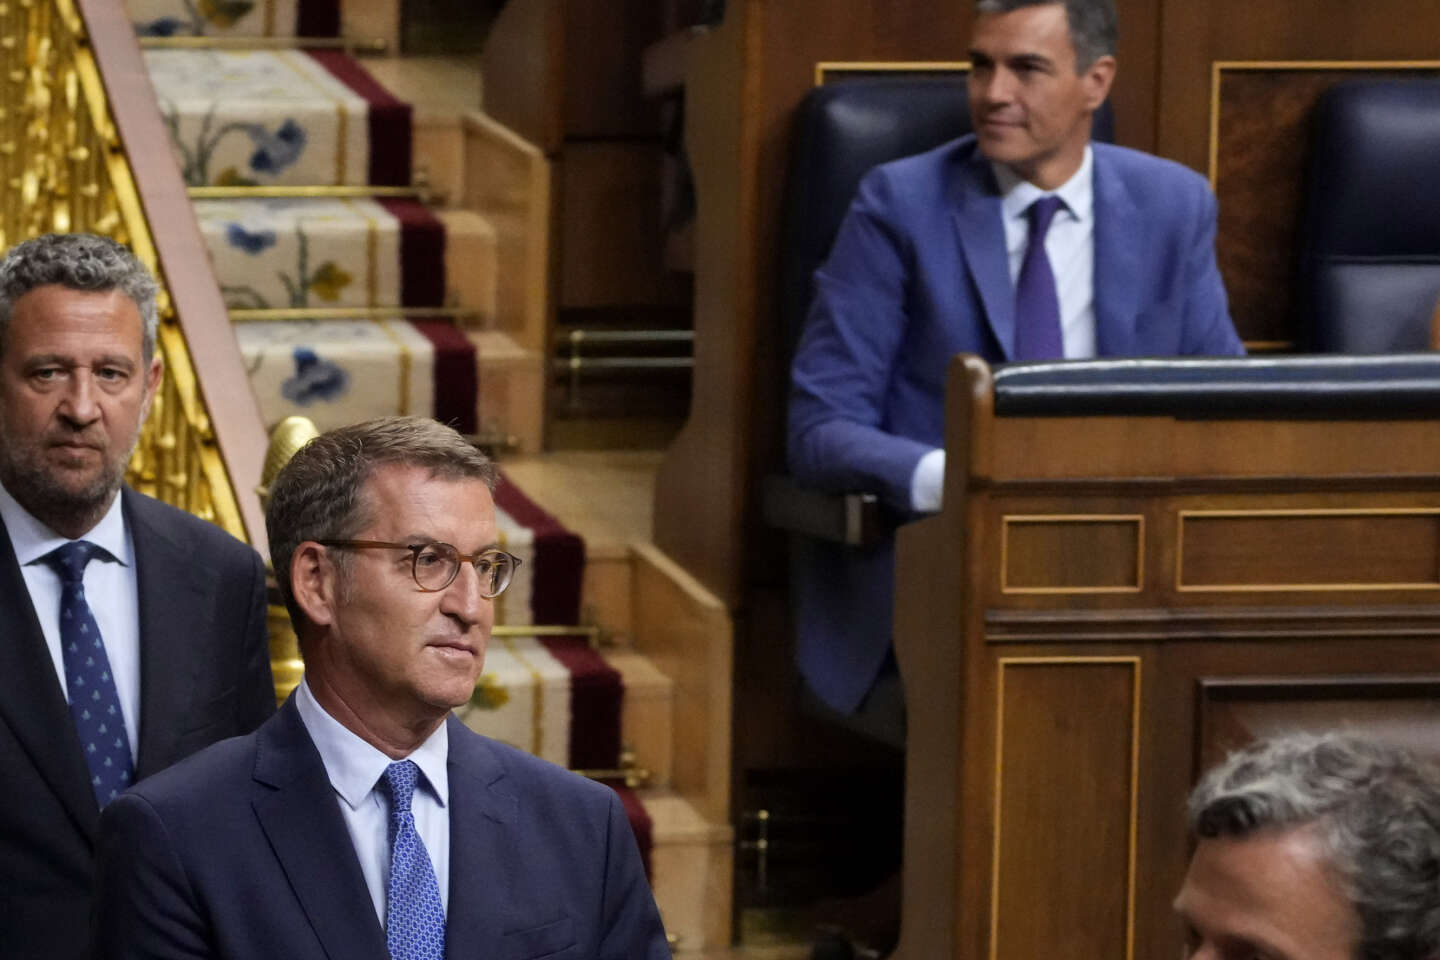 En España, el conservador Alberto Núñez Feijoo intentará conseguir una investidura para formar gobierno